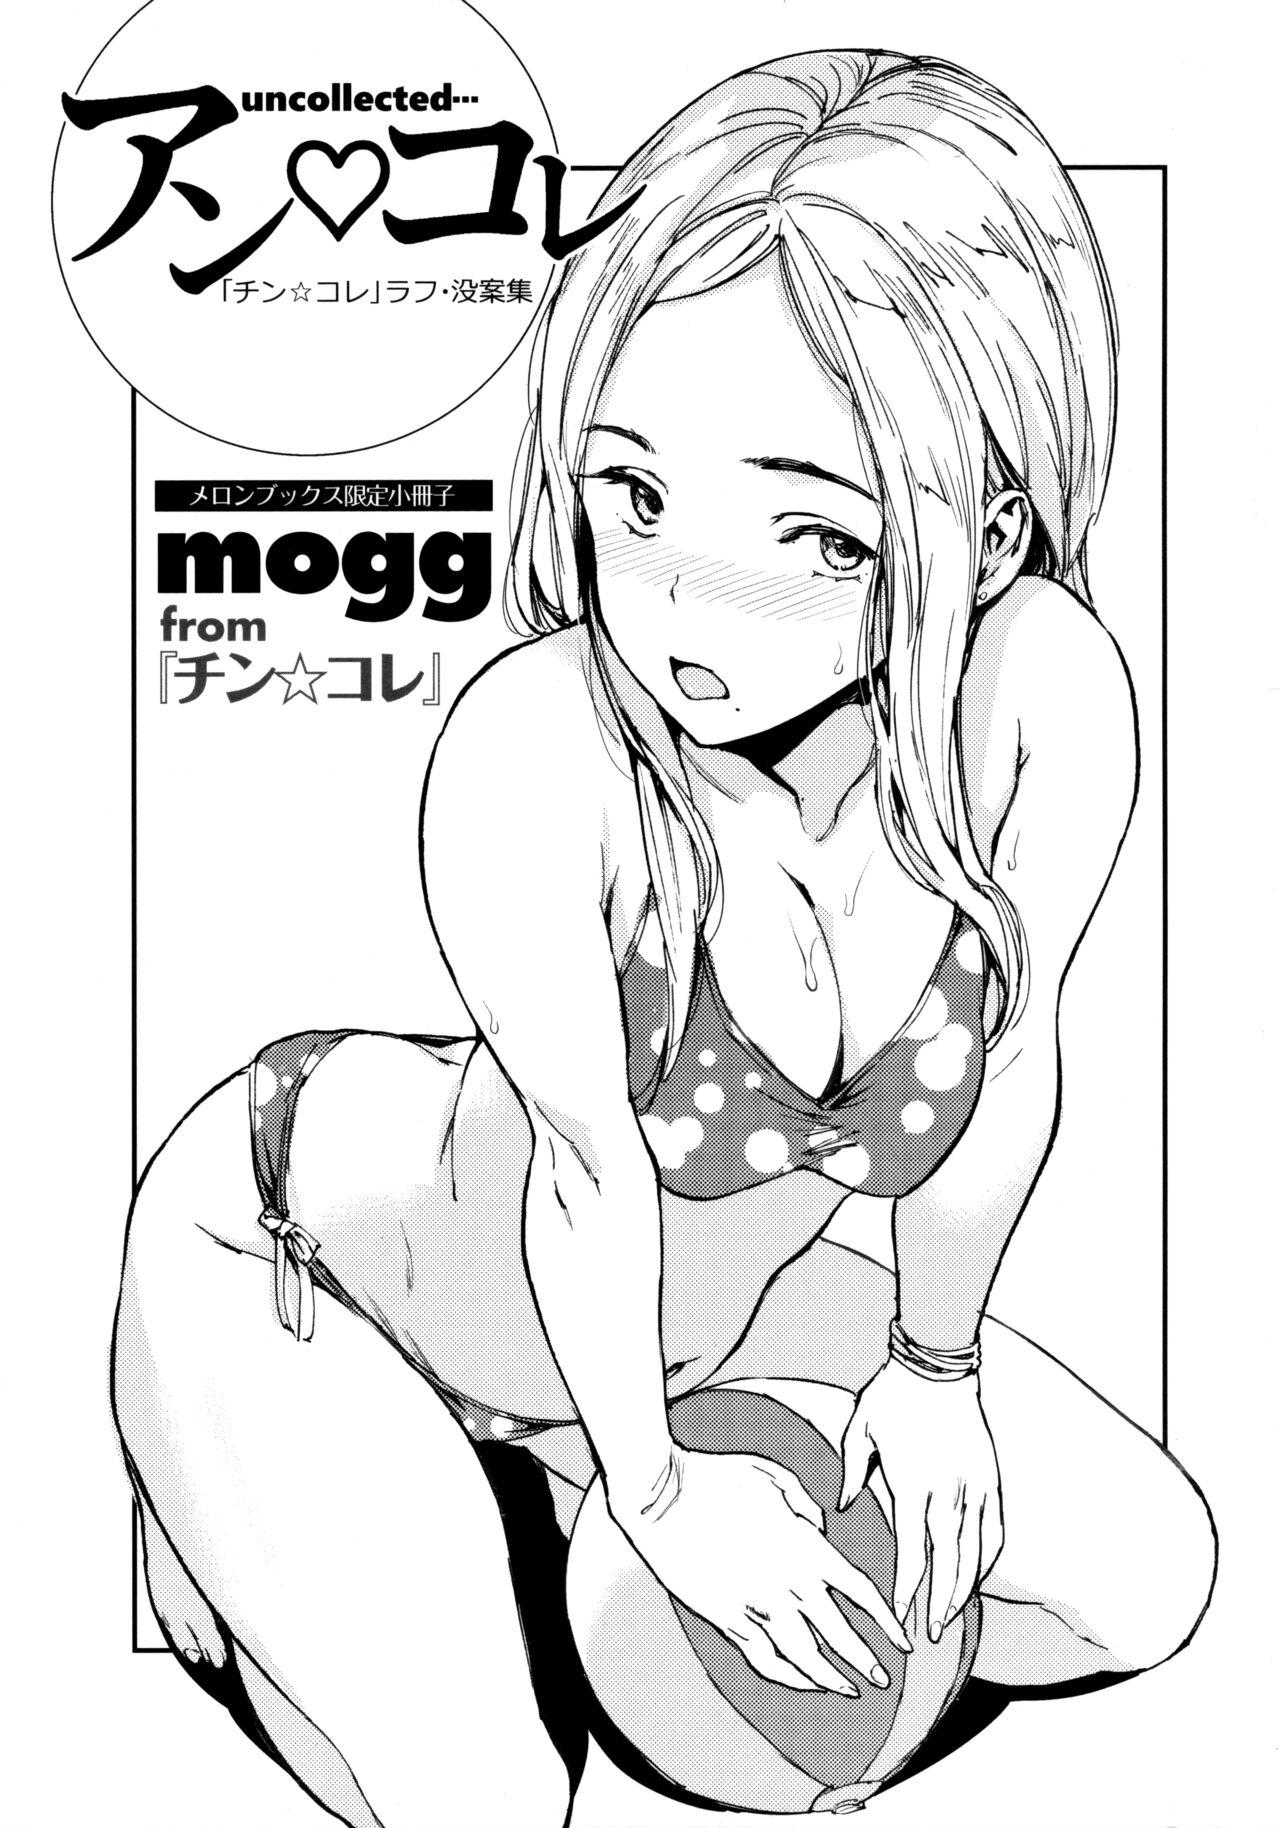 チン☆コレ メロンブックス特典 8P小冊子 [mogg]  0